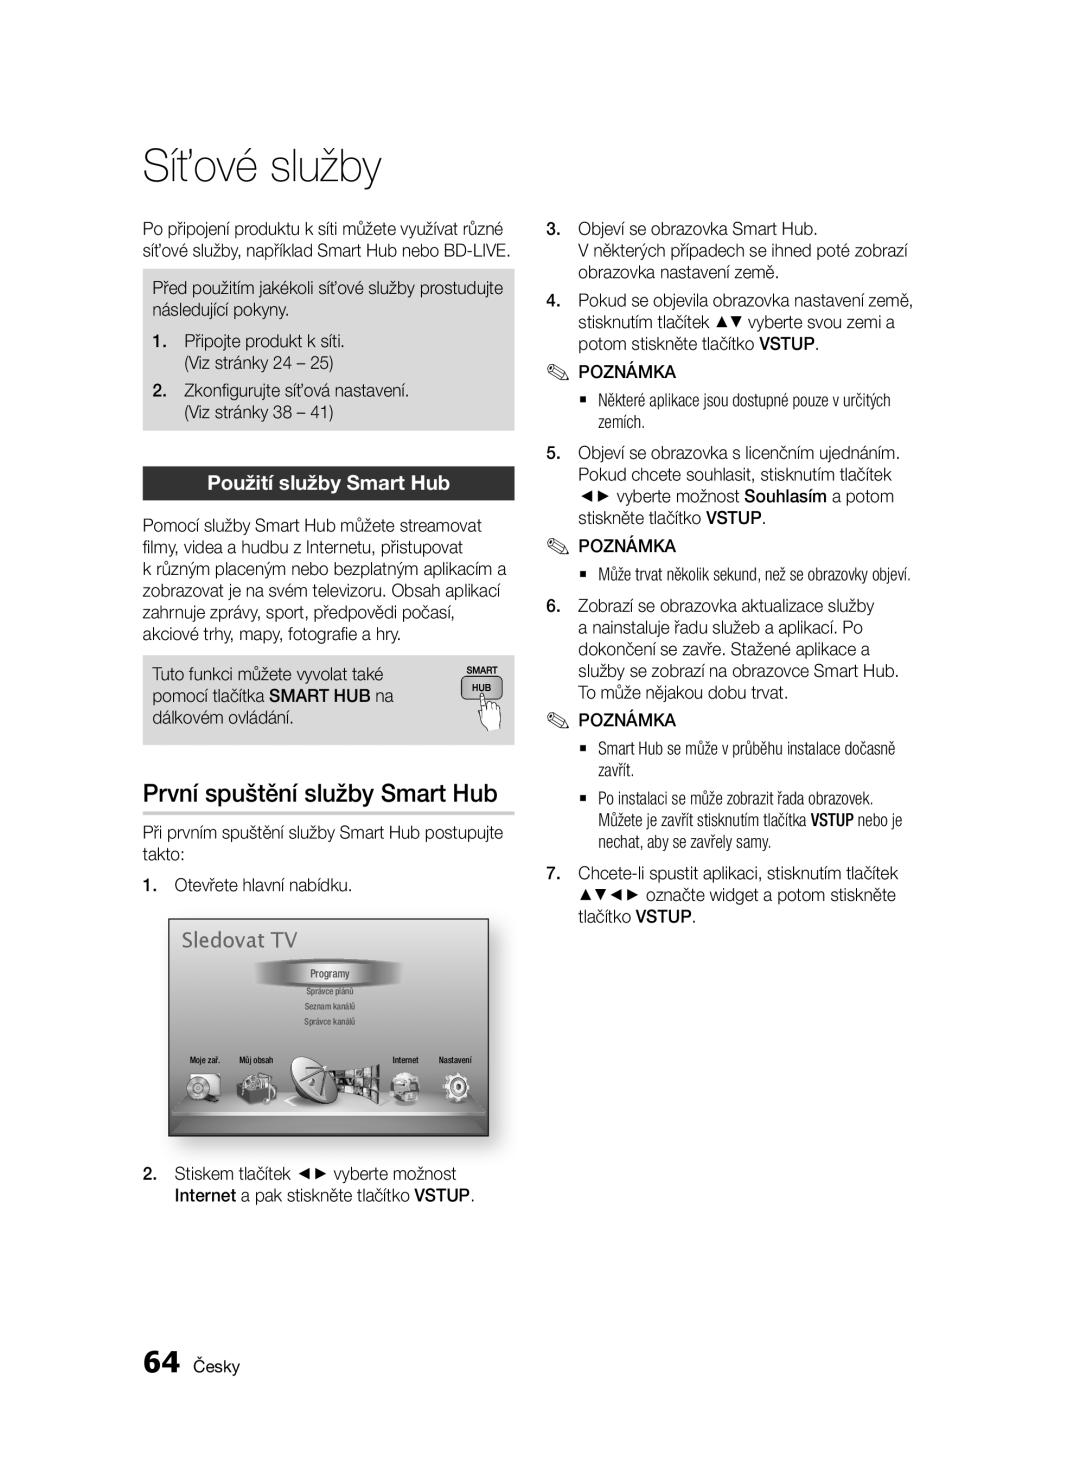 Samsung BD-E6300/EN manual Síťové služby, První spuštění služby Smart Hub, Použití služby Smart Hub, Sledovat TV, 64 Česky 